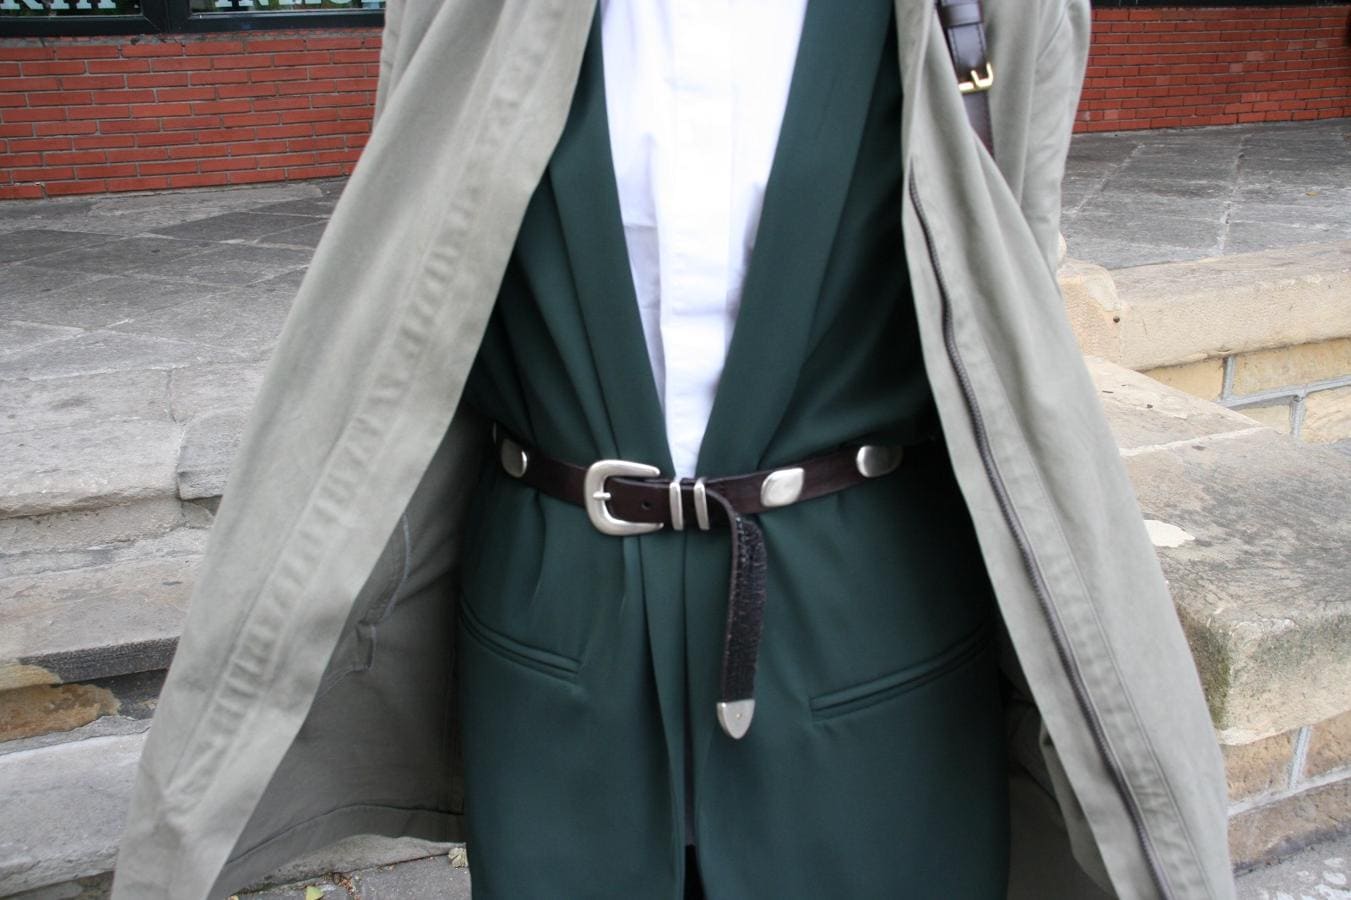 Elena Muguerzo, de 41 años y de Neguri, es toda una profesional en construir estilismos que brillan por sí mismos. Se compró el 'outfit' en una tienda de Eibar llamada Cedry. Y se compone de un traje de dos piezas en verde oscuro, una camisa blanca y una chaqueta. Completa el look con un bolso de Louis Vuitton y unos zapatos de tacón en color mostaza que adquirió en una tienda de la calle bilbaína Alameda Recalde. 